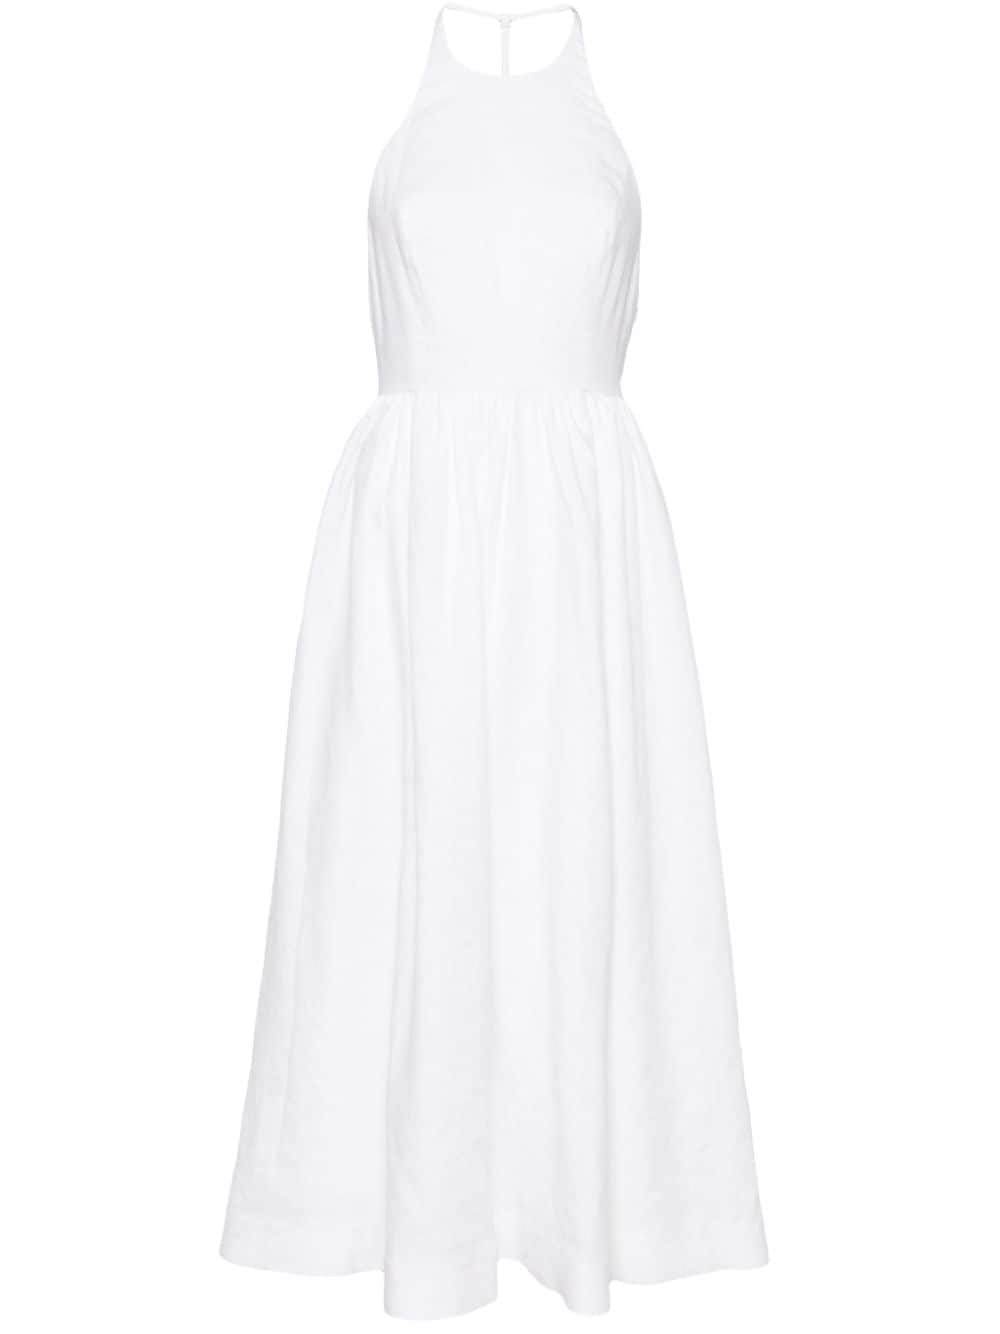 Reformation Percy linen dress - White von Reformation